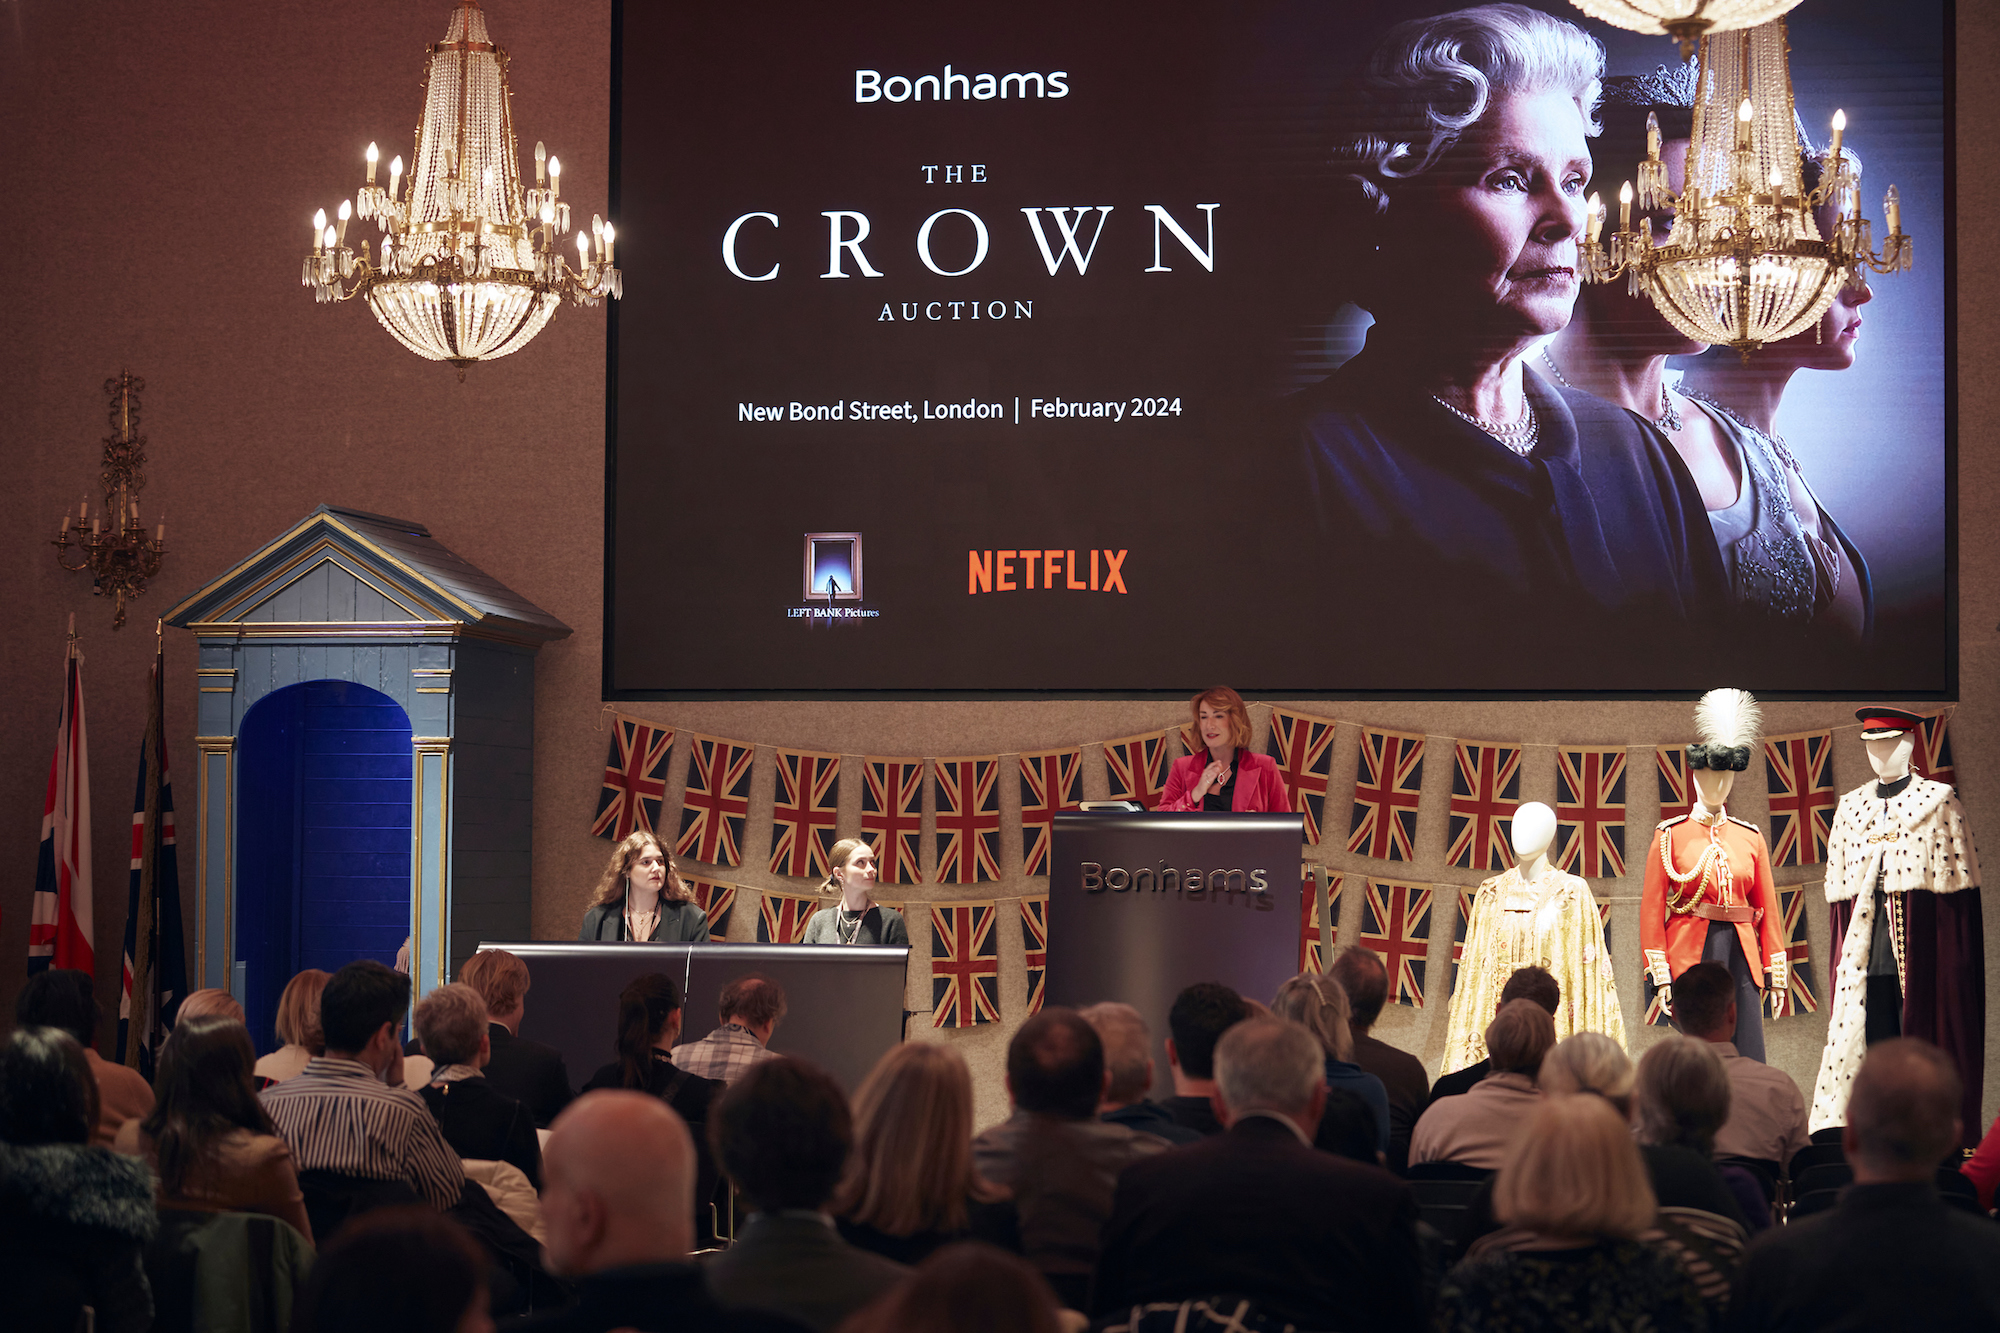 Vente The Crown chez Bonhams (New Bond Street, Londres), 7 février 2024. © Bonhams